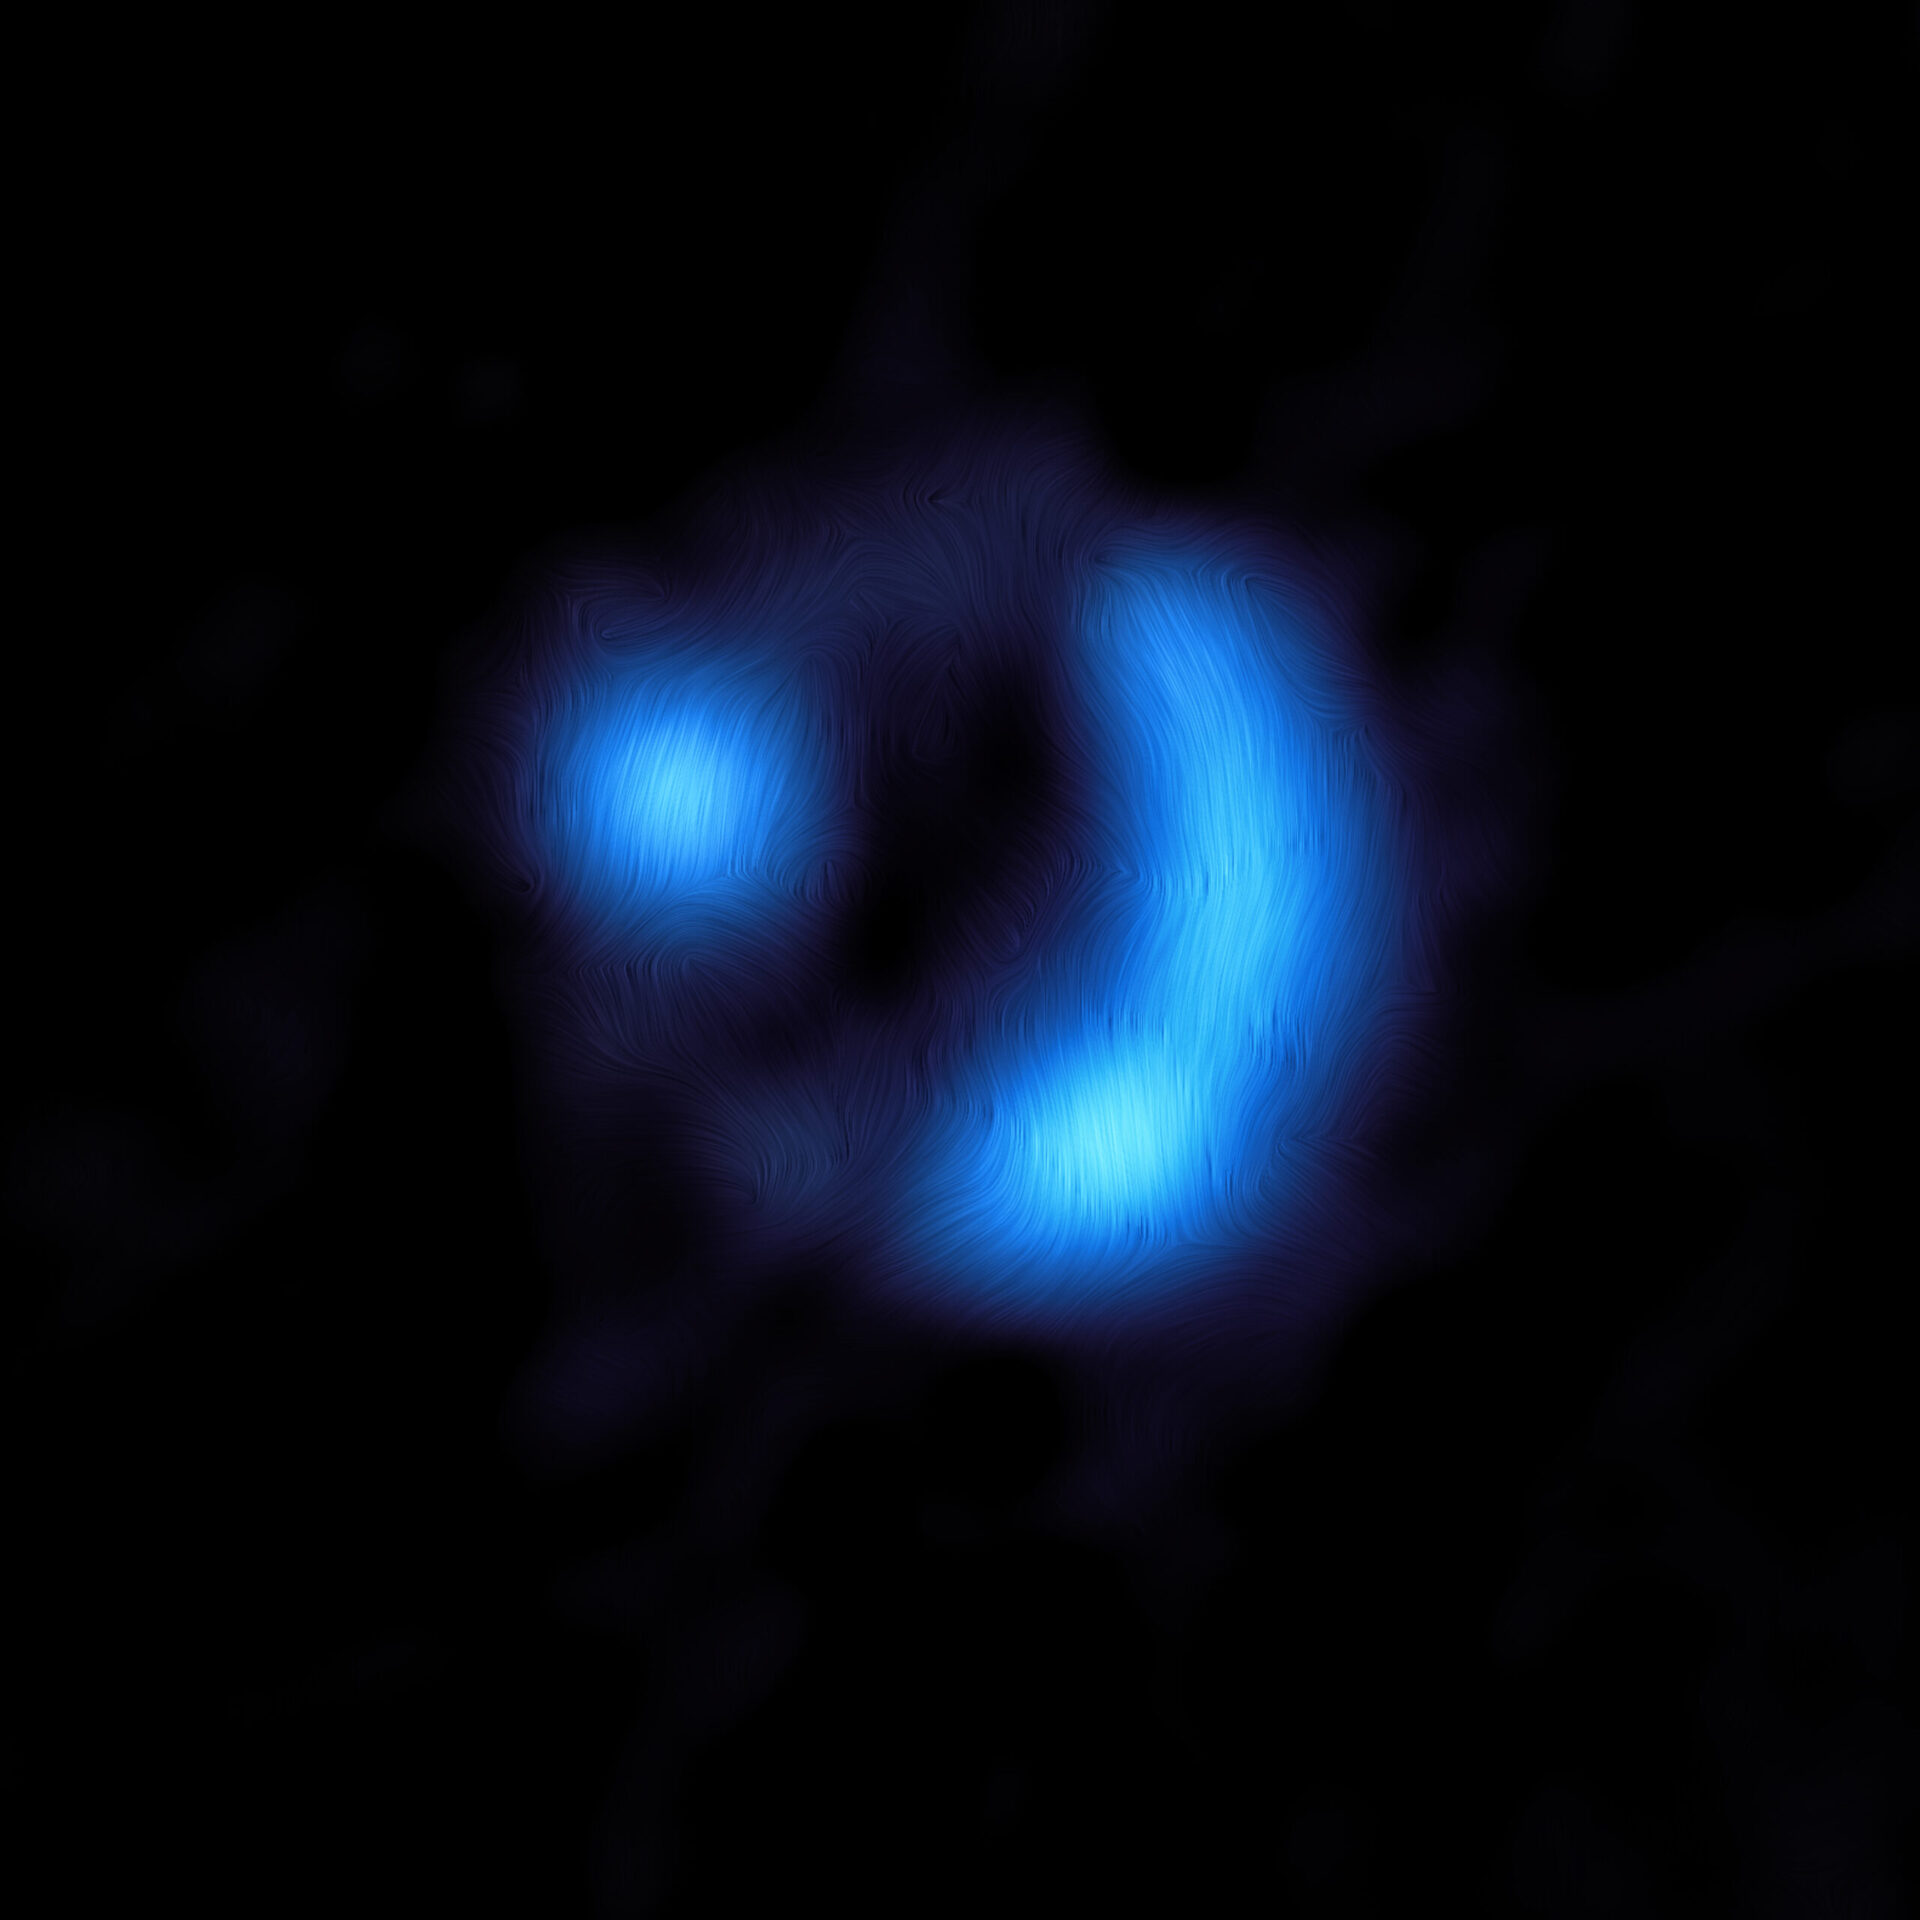 Vista de ALMA de la galaxia 9io9